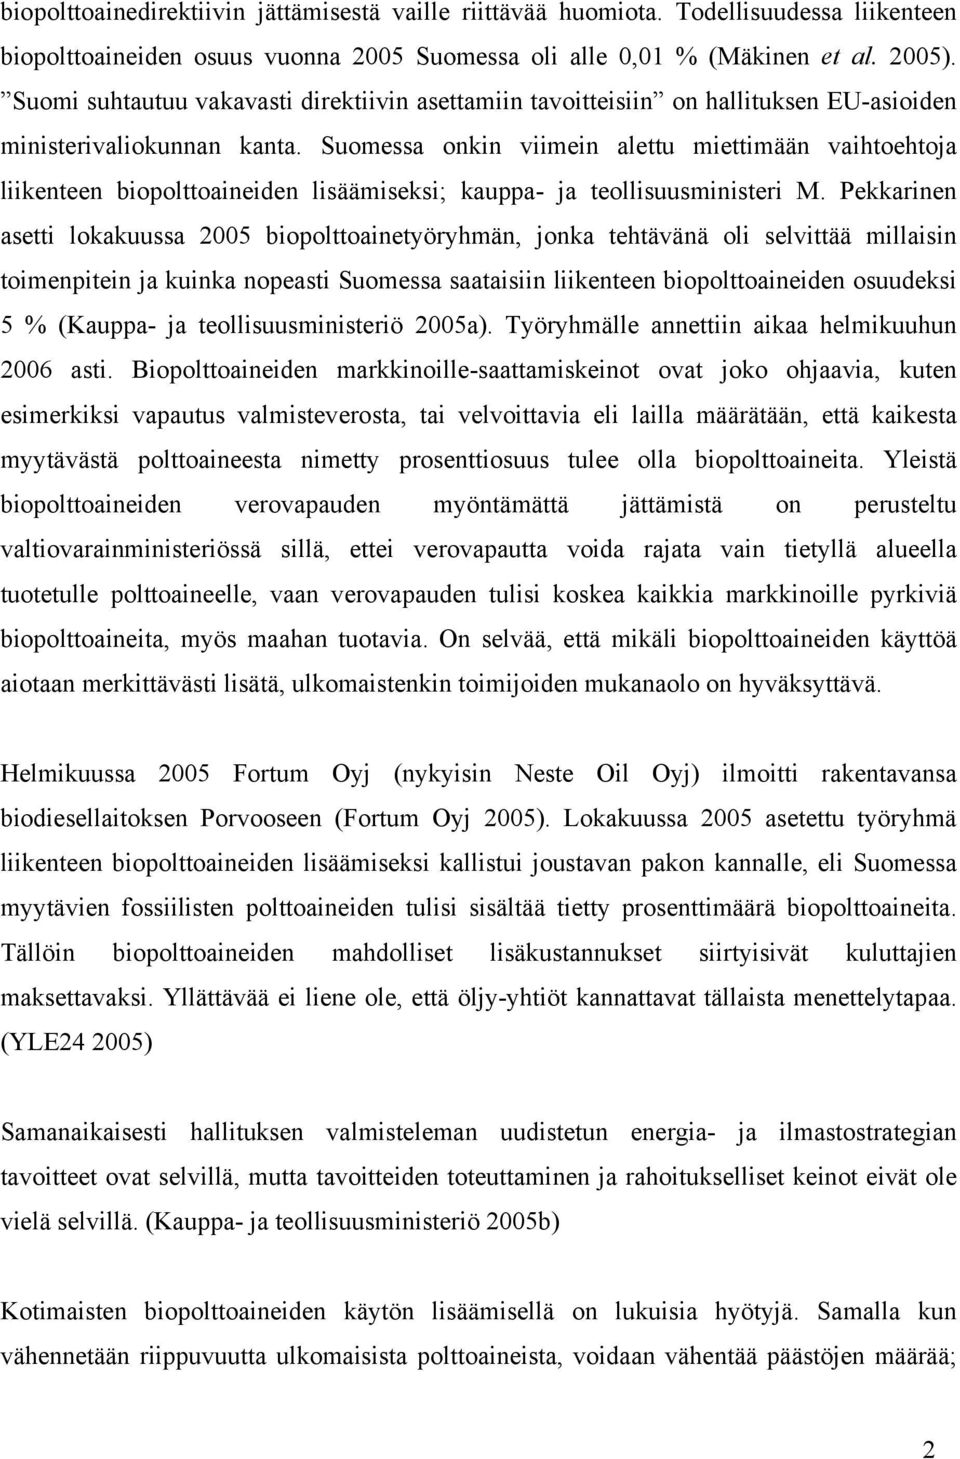 Suomessa onkin viimein alettu miettimään vaihtoehtoja liikenteen biopolttoaineiden lisäämiseksi; kauppa- ja teollisuusministeri M.